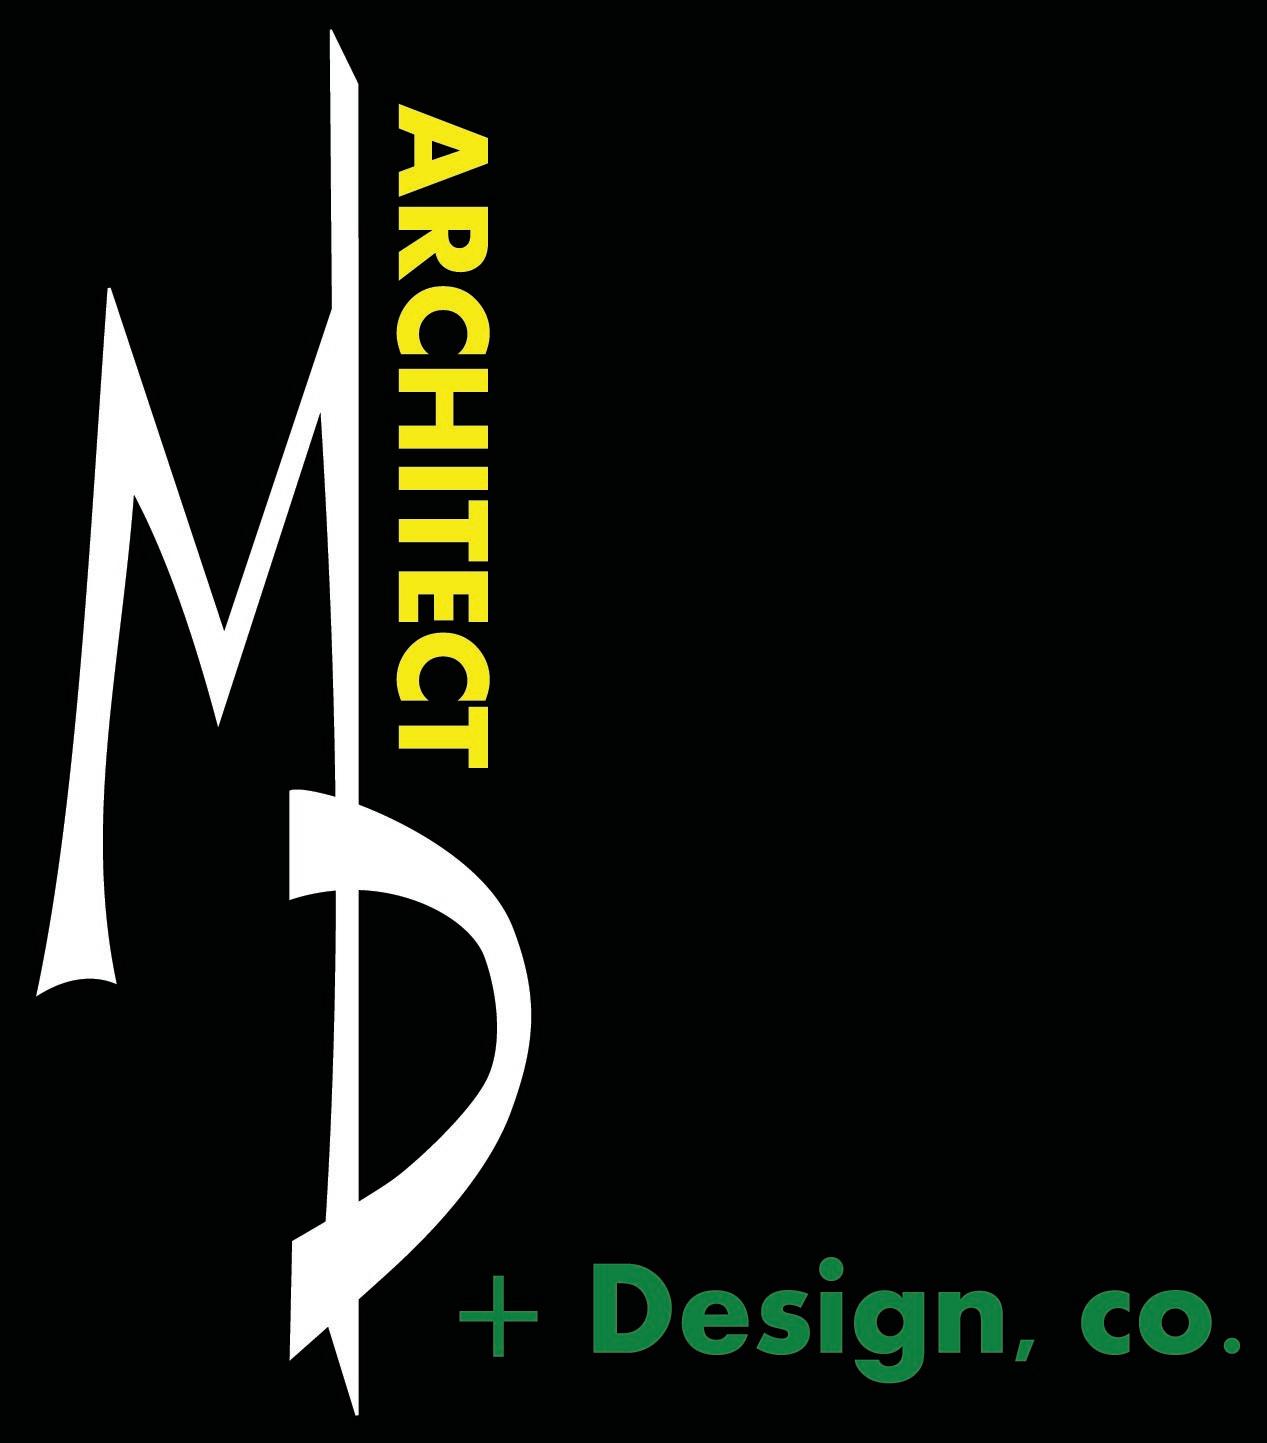 M|D Architect + Design, Co. logo